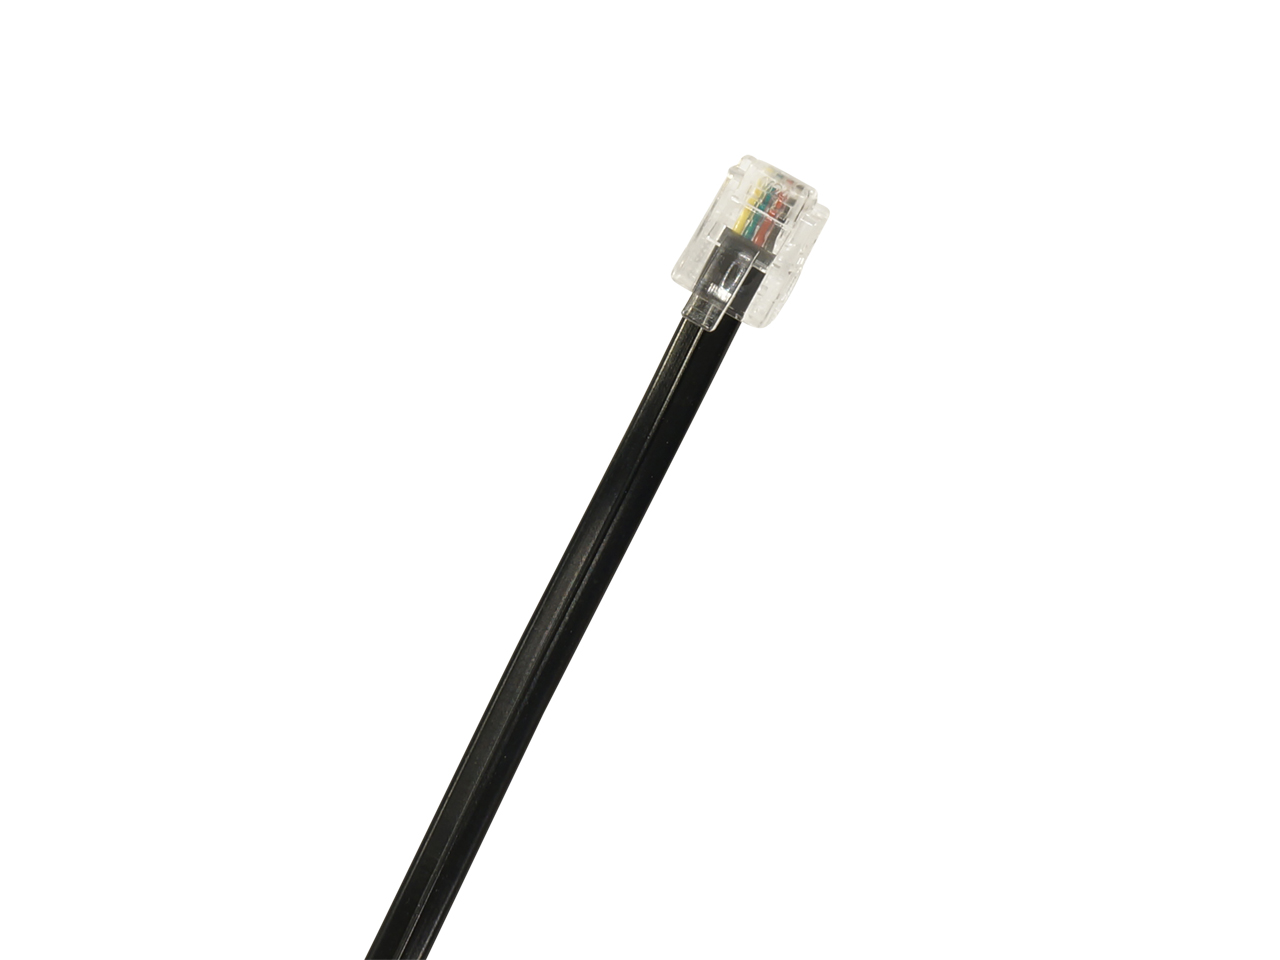 Hormann Optical sensor receiver SKS Cable length: 750 mm